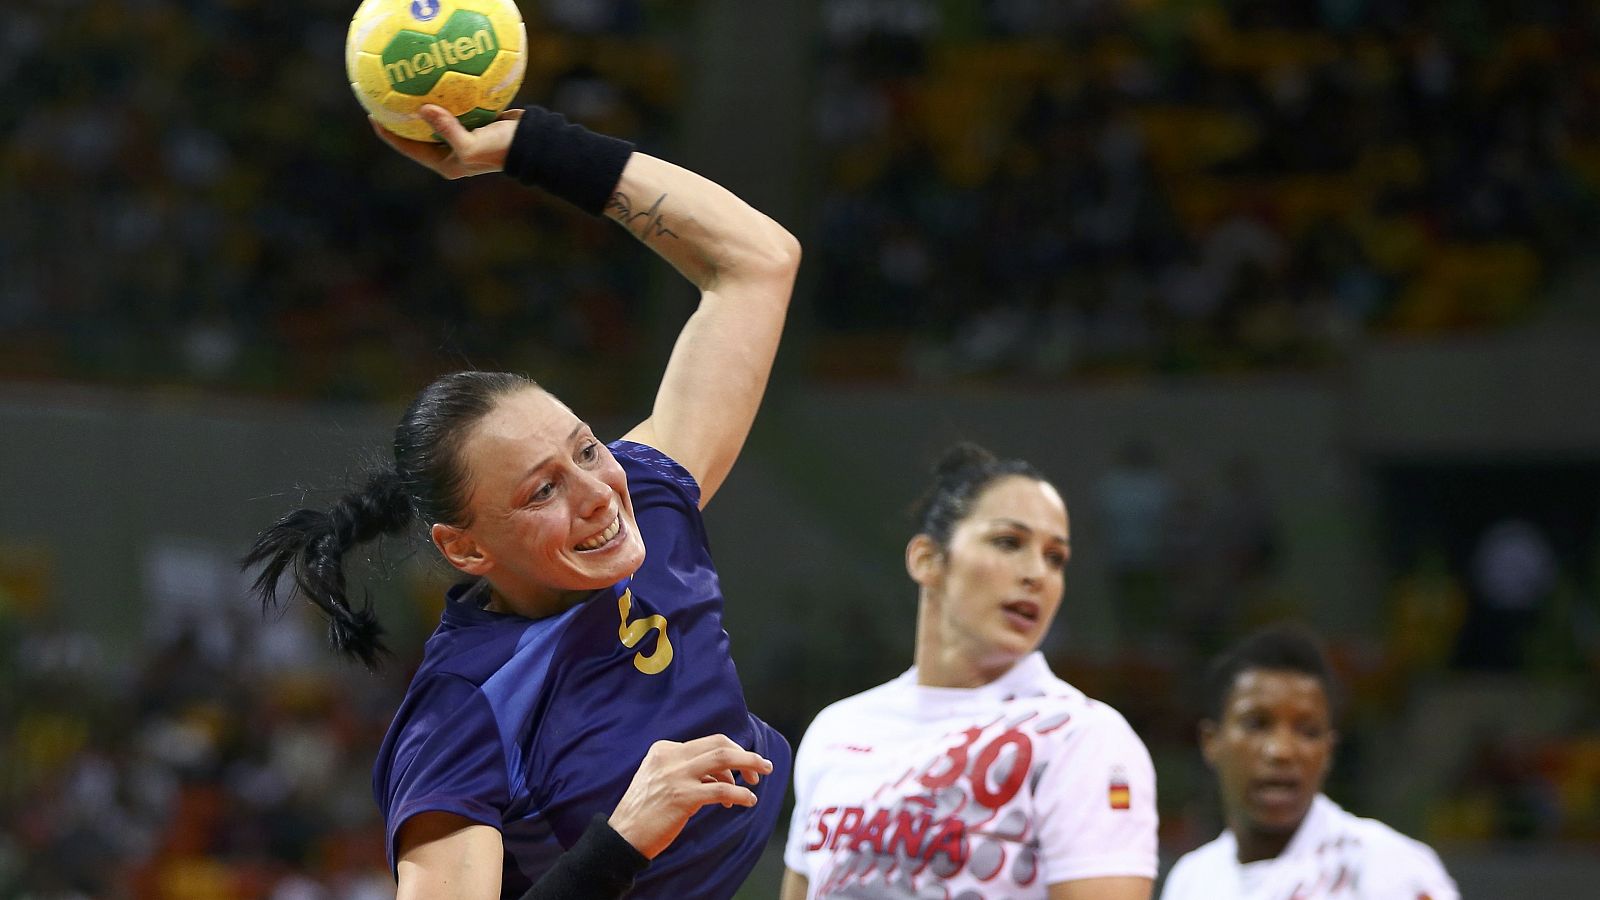 La selección femenina de balonmano ha caído derrotado frente a Rumanía (24-21) y tendrá que certificar el pase a cuartos de final venciendo a Angola.